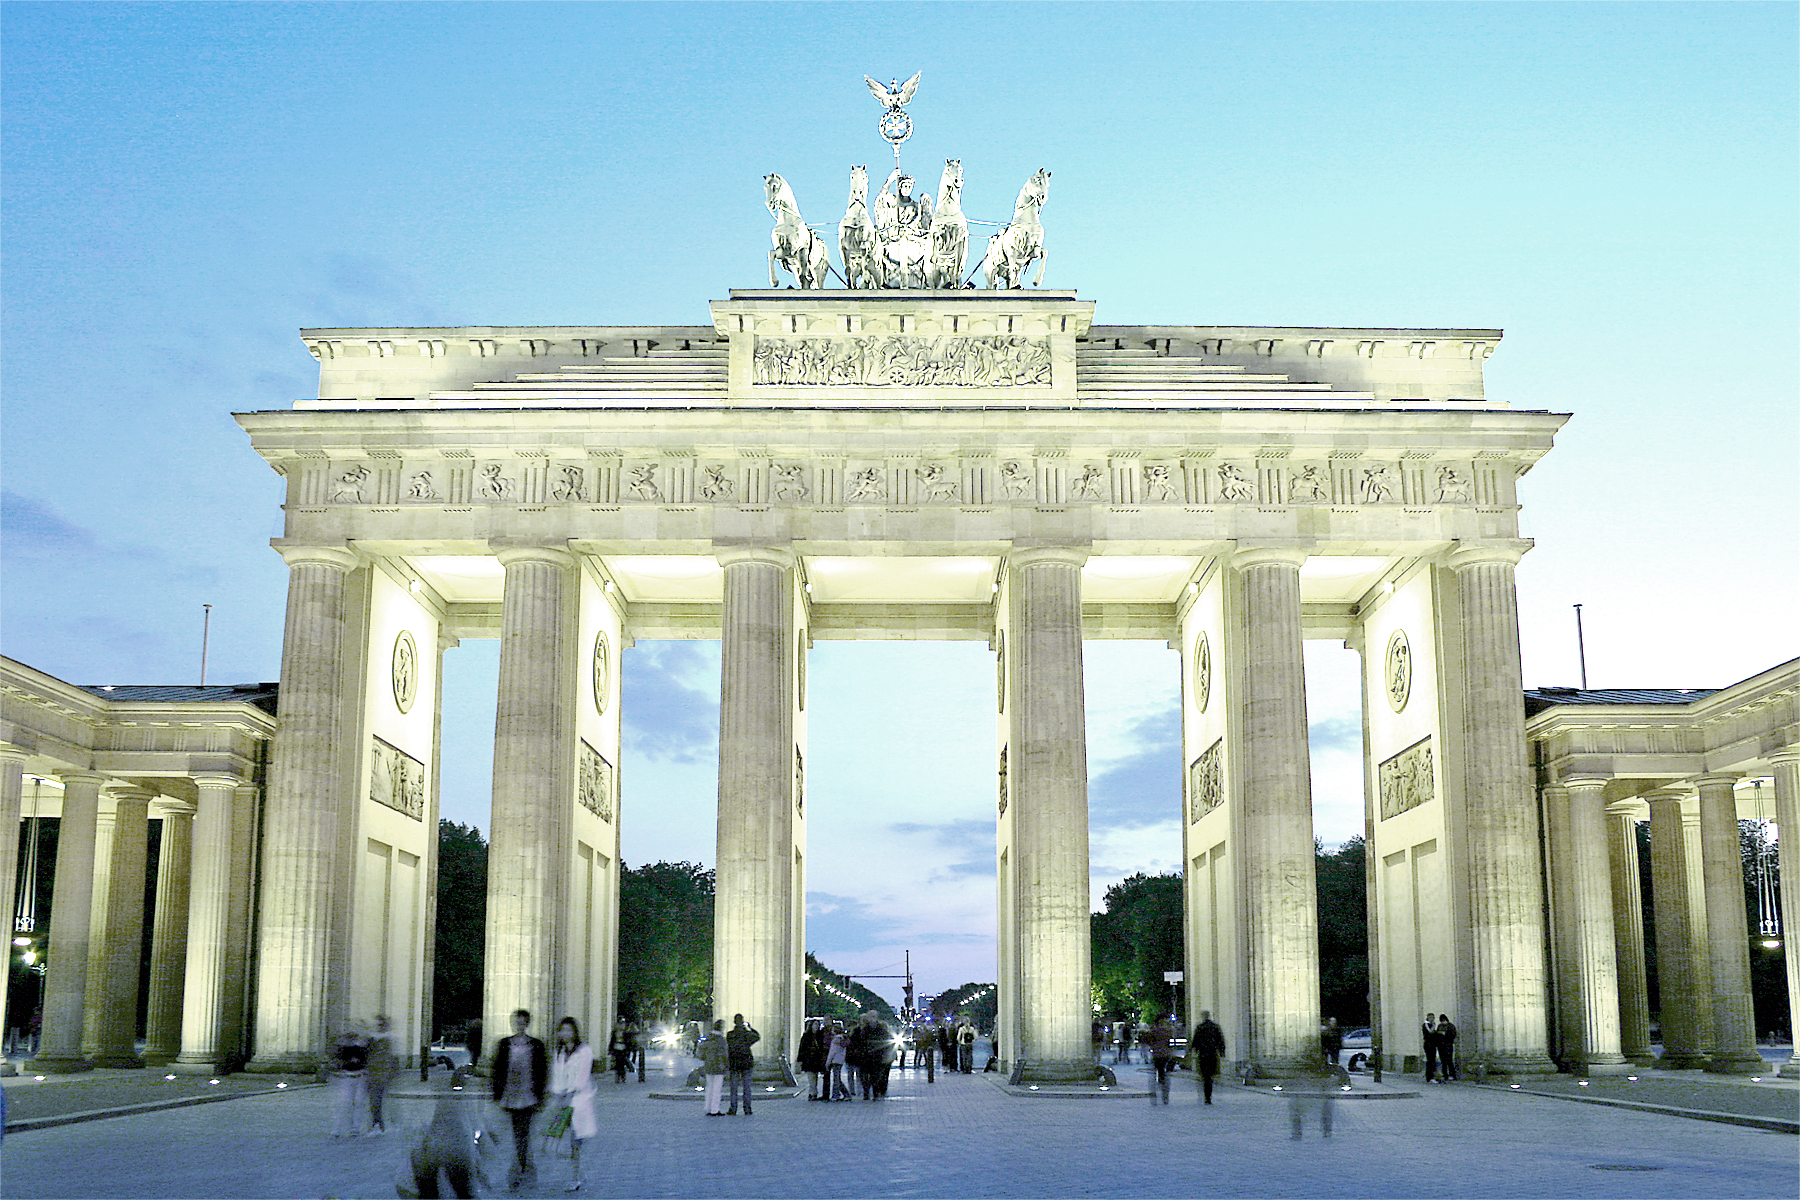 Puerta de Brandenburgo, berlin